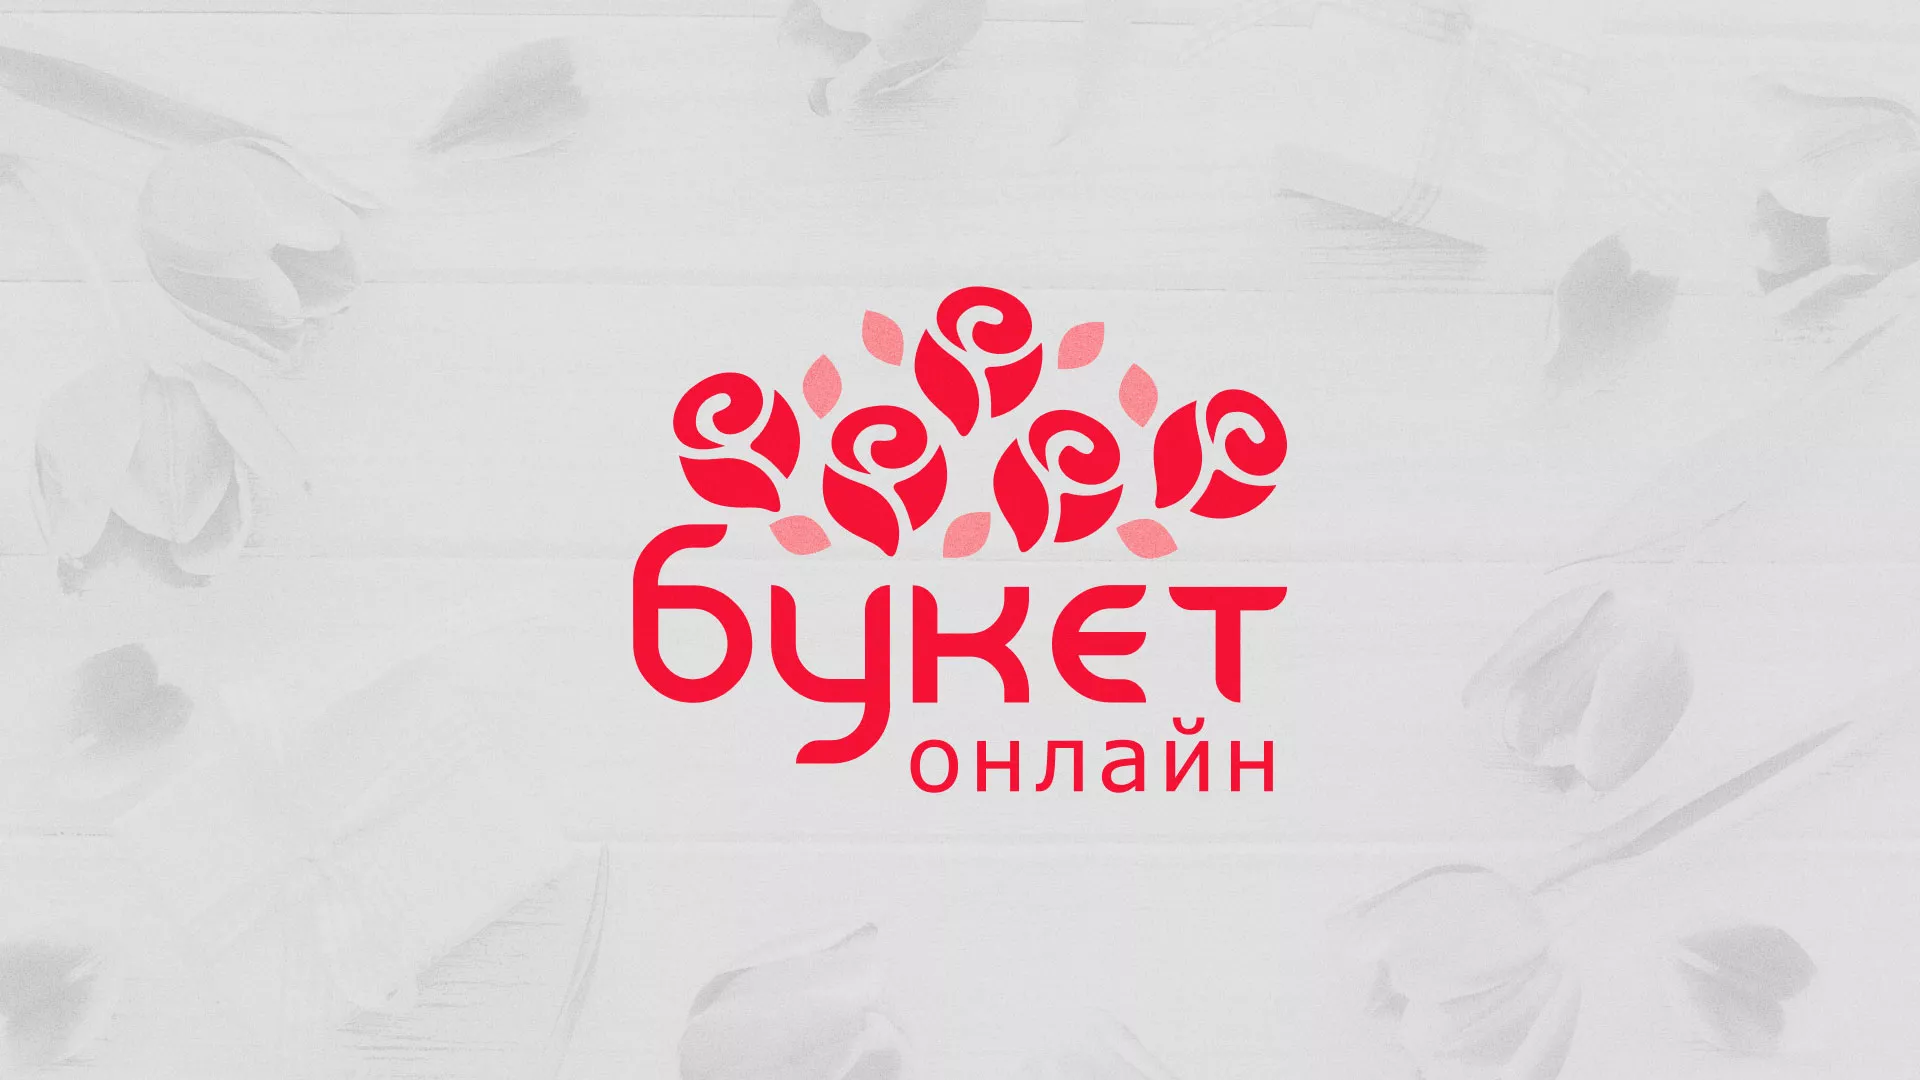 Создание интернет-магазина «Букет-онлайн» по цветам в Плавске